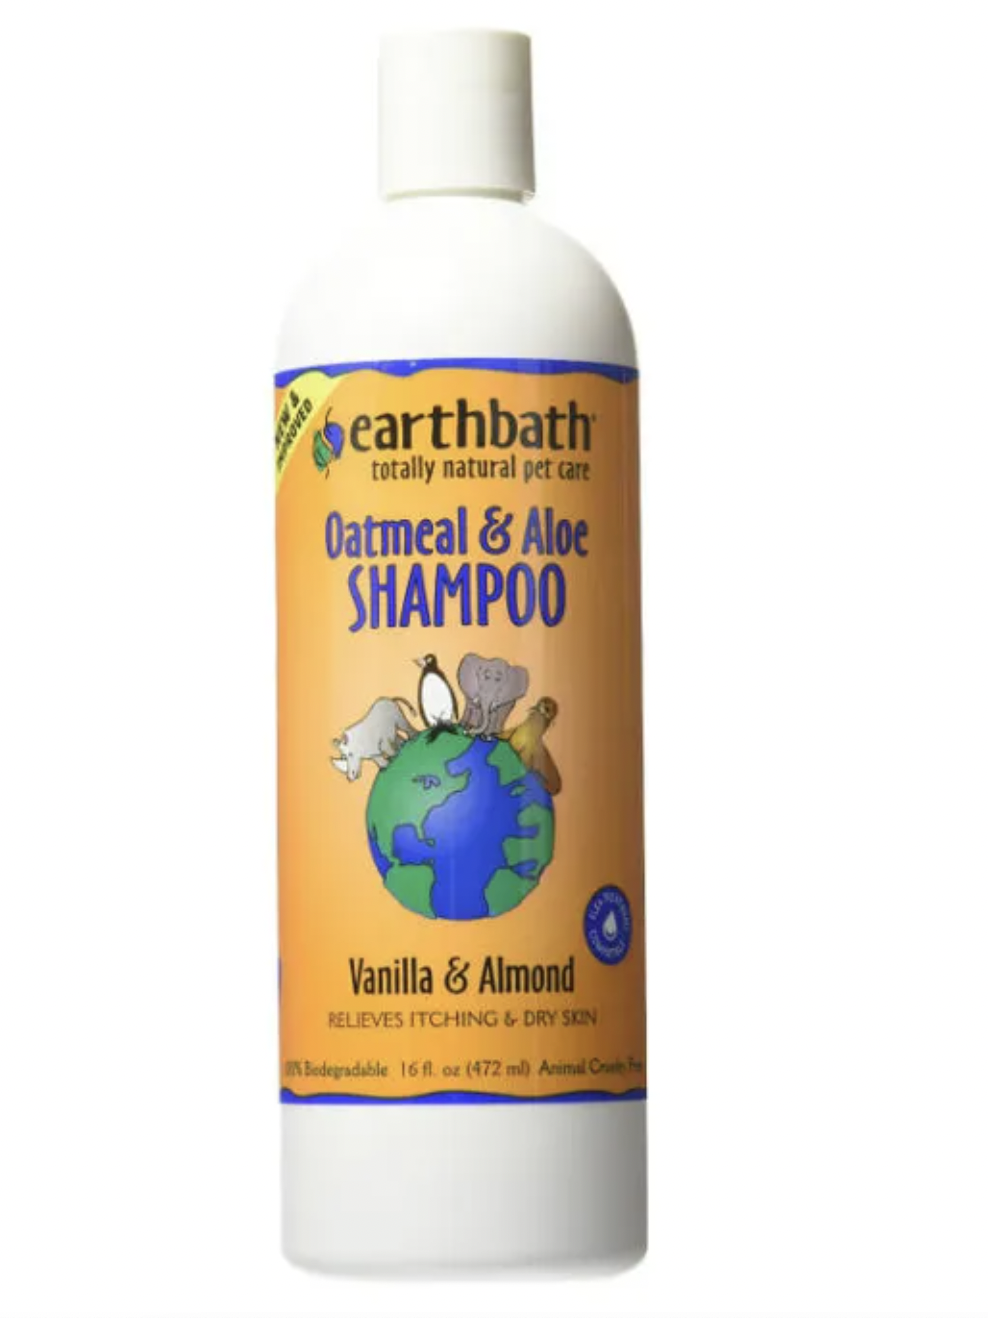 Oatmeal & Aloe Shampoo - Vanilla & Almond - Earthbath